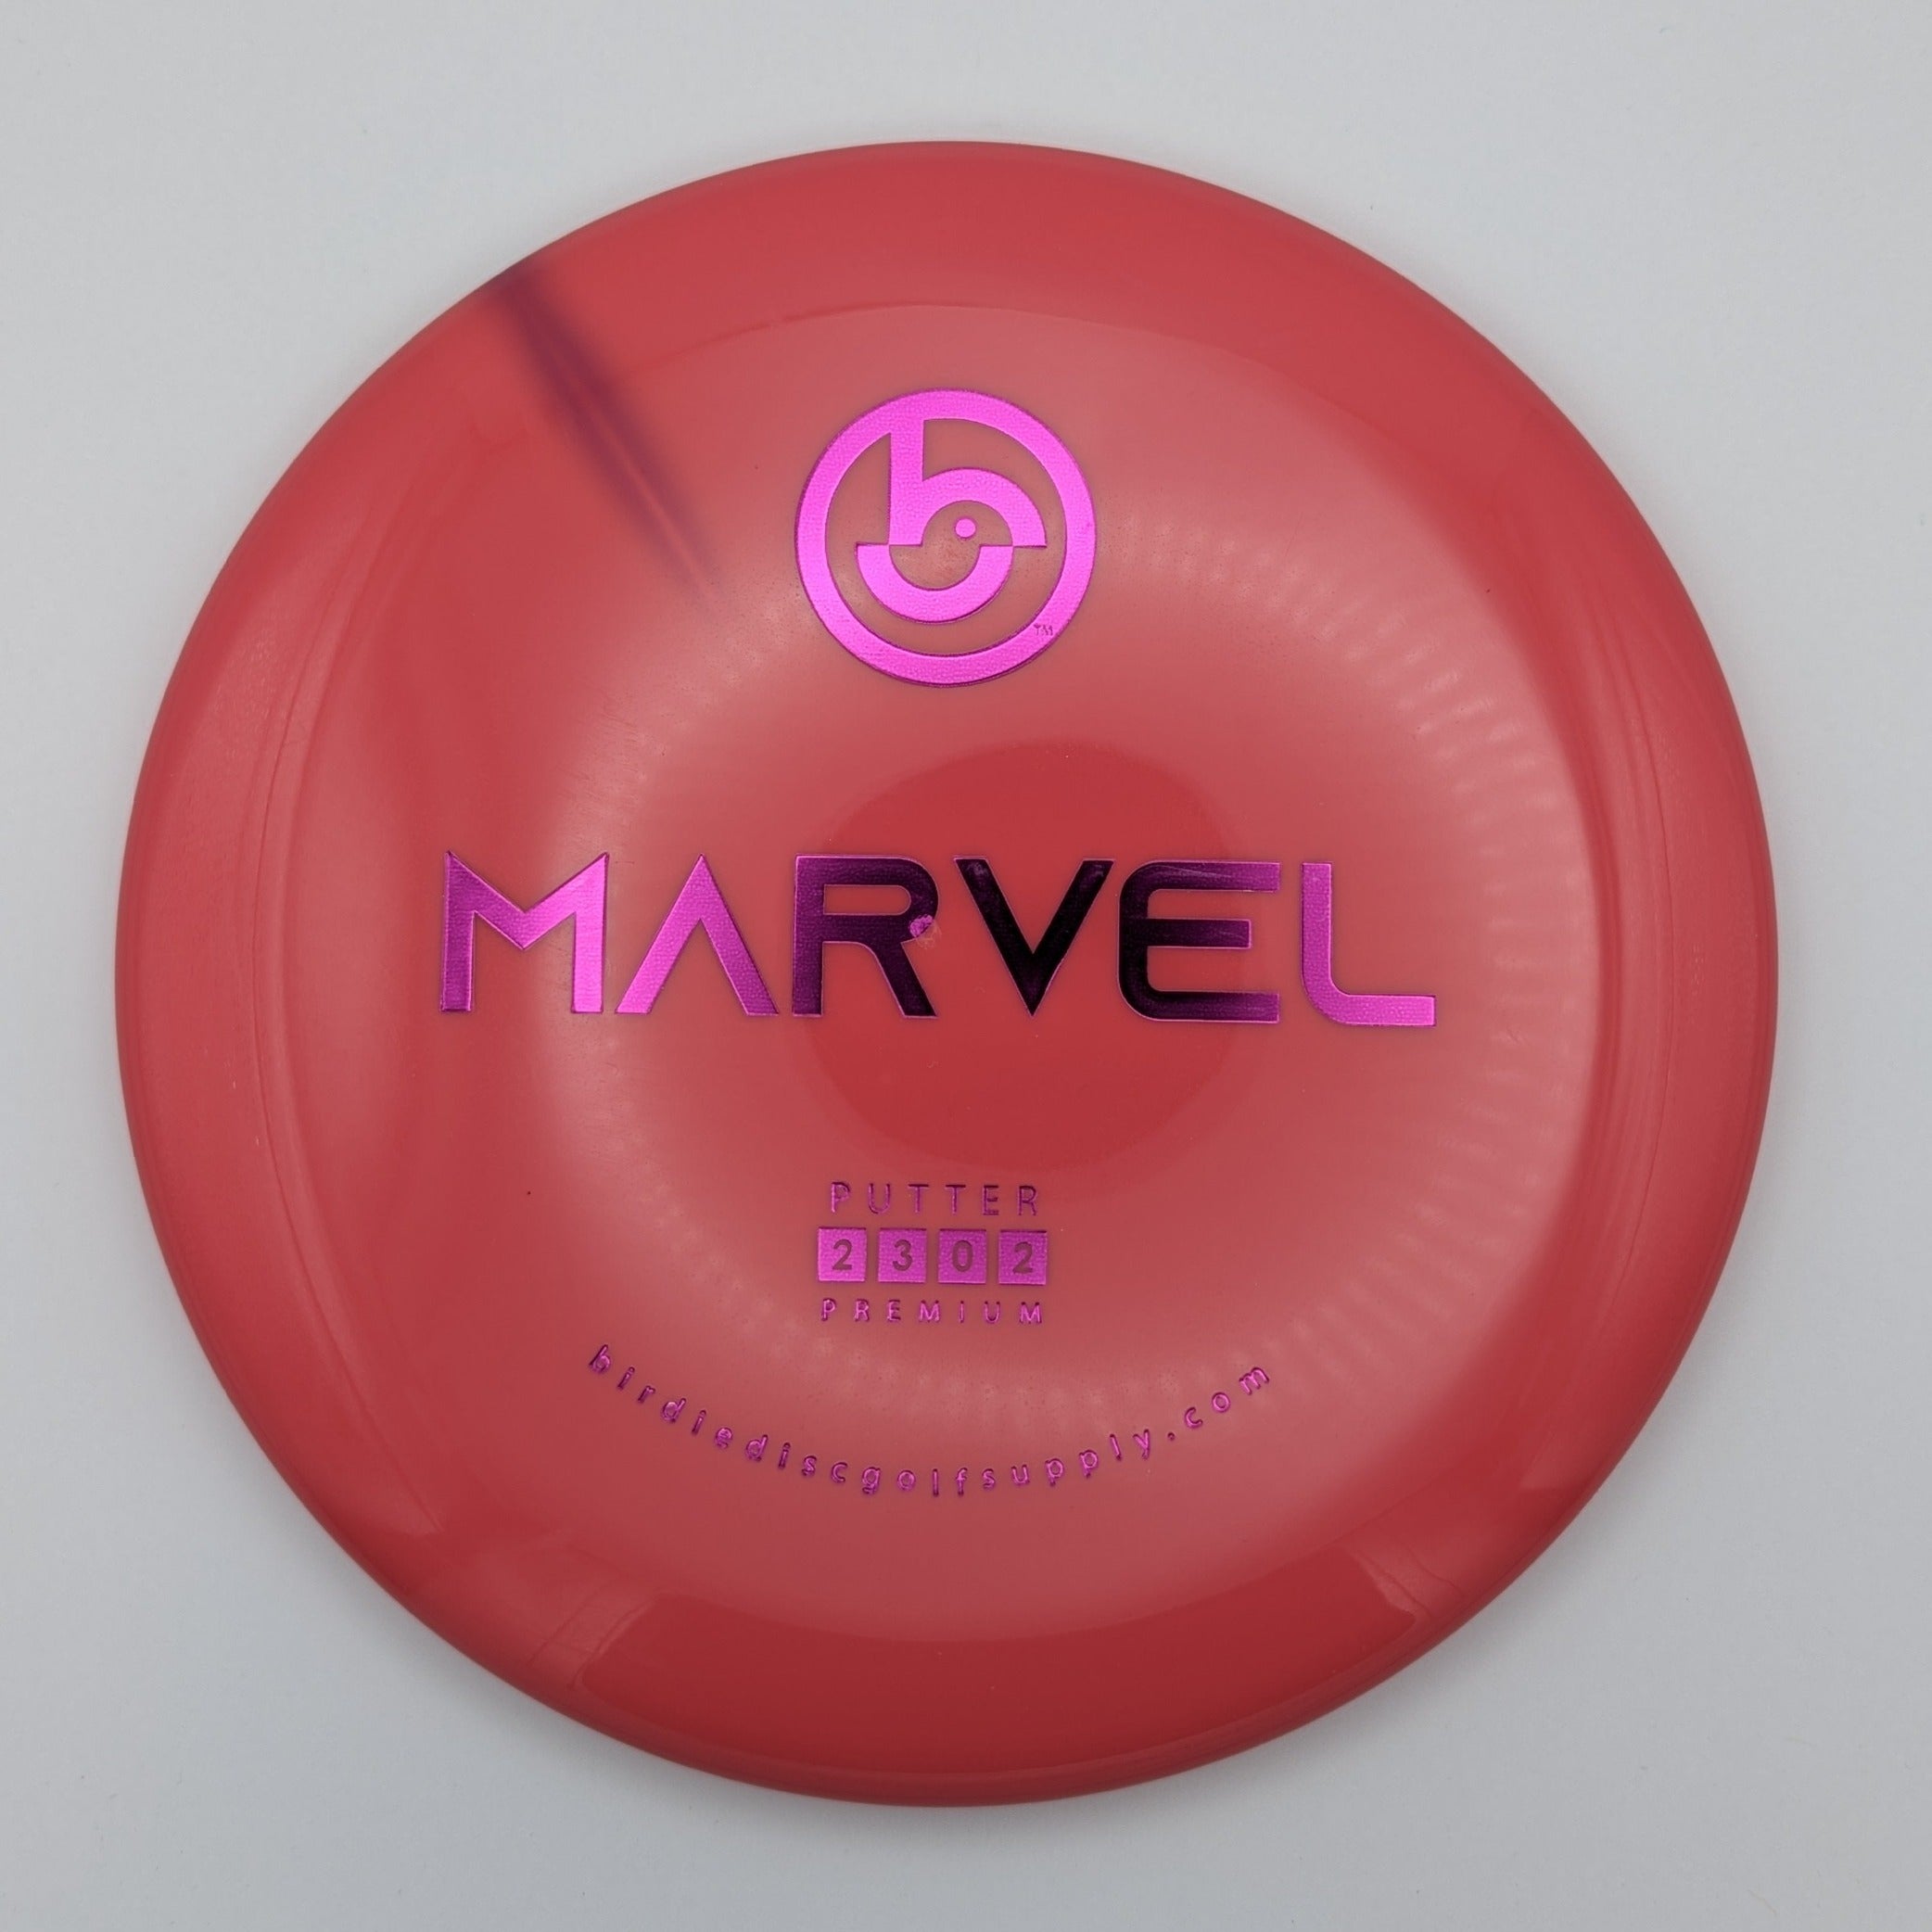 BIRDIE DISC GOLF SUPPLY CO. Putt & Approach Marvel Premium Pink